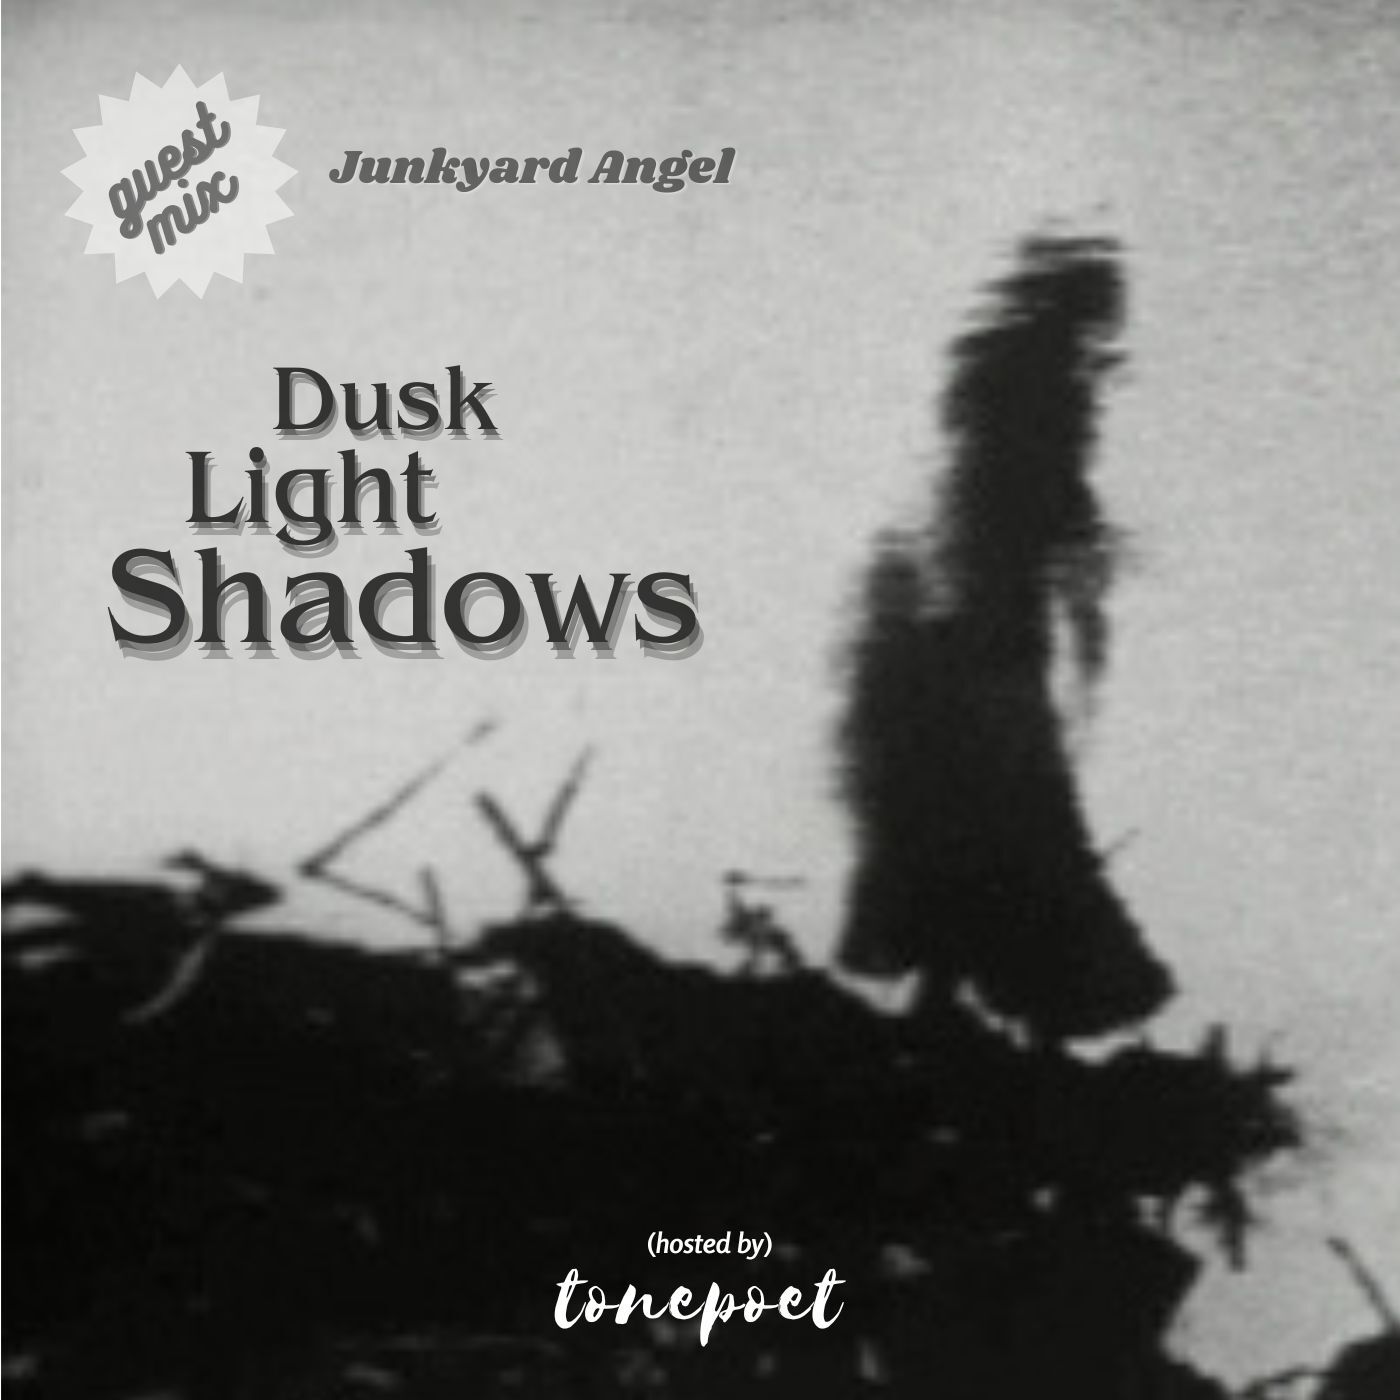 Dusk_Light_Shadows_Junkyard_Angel_FINAL_aumoa...